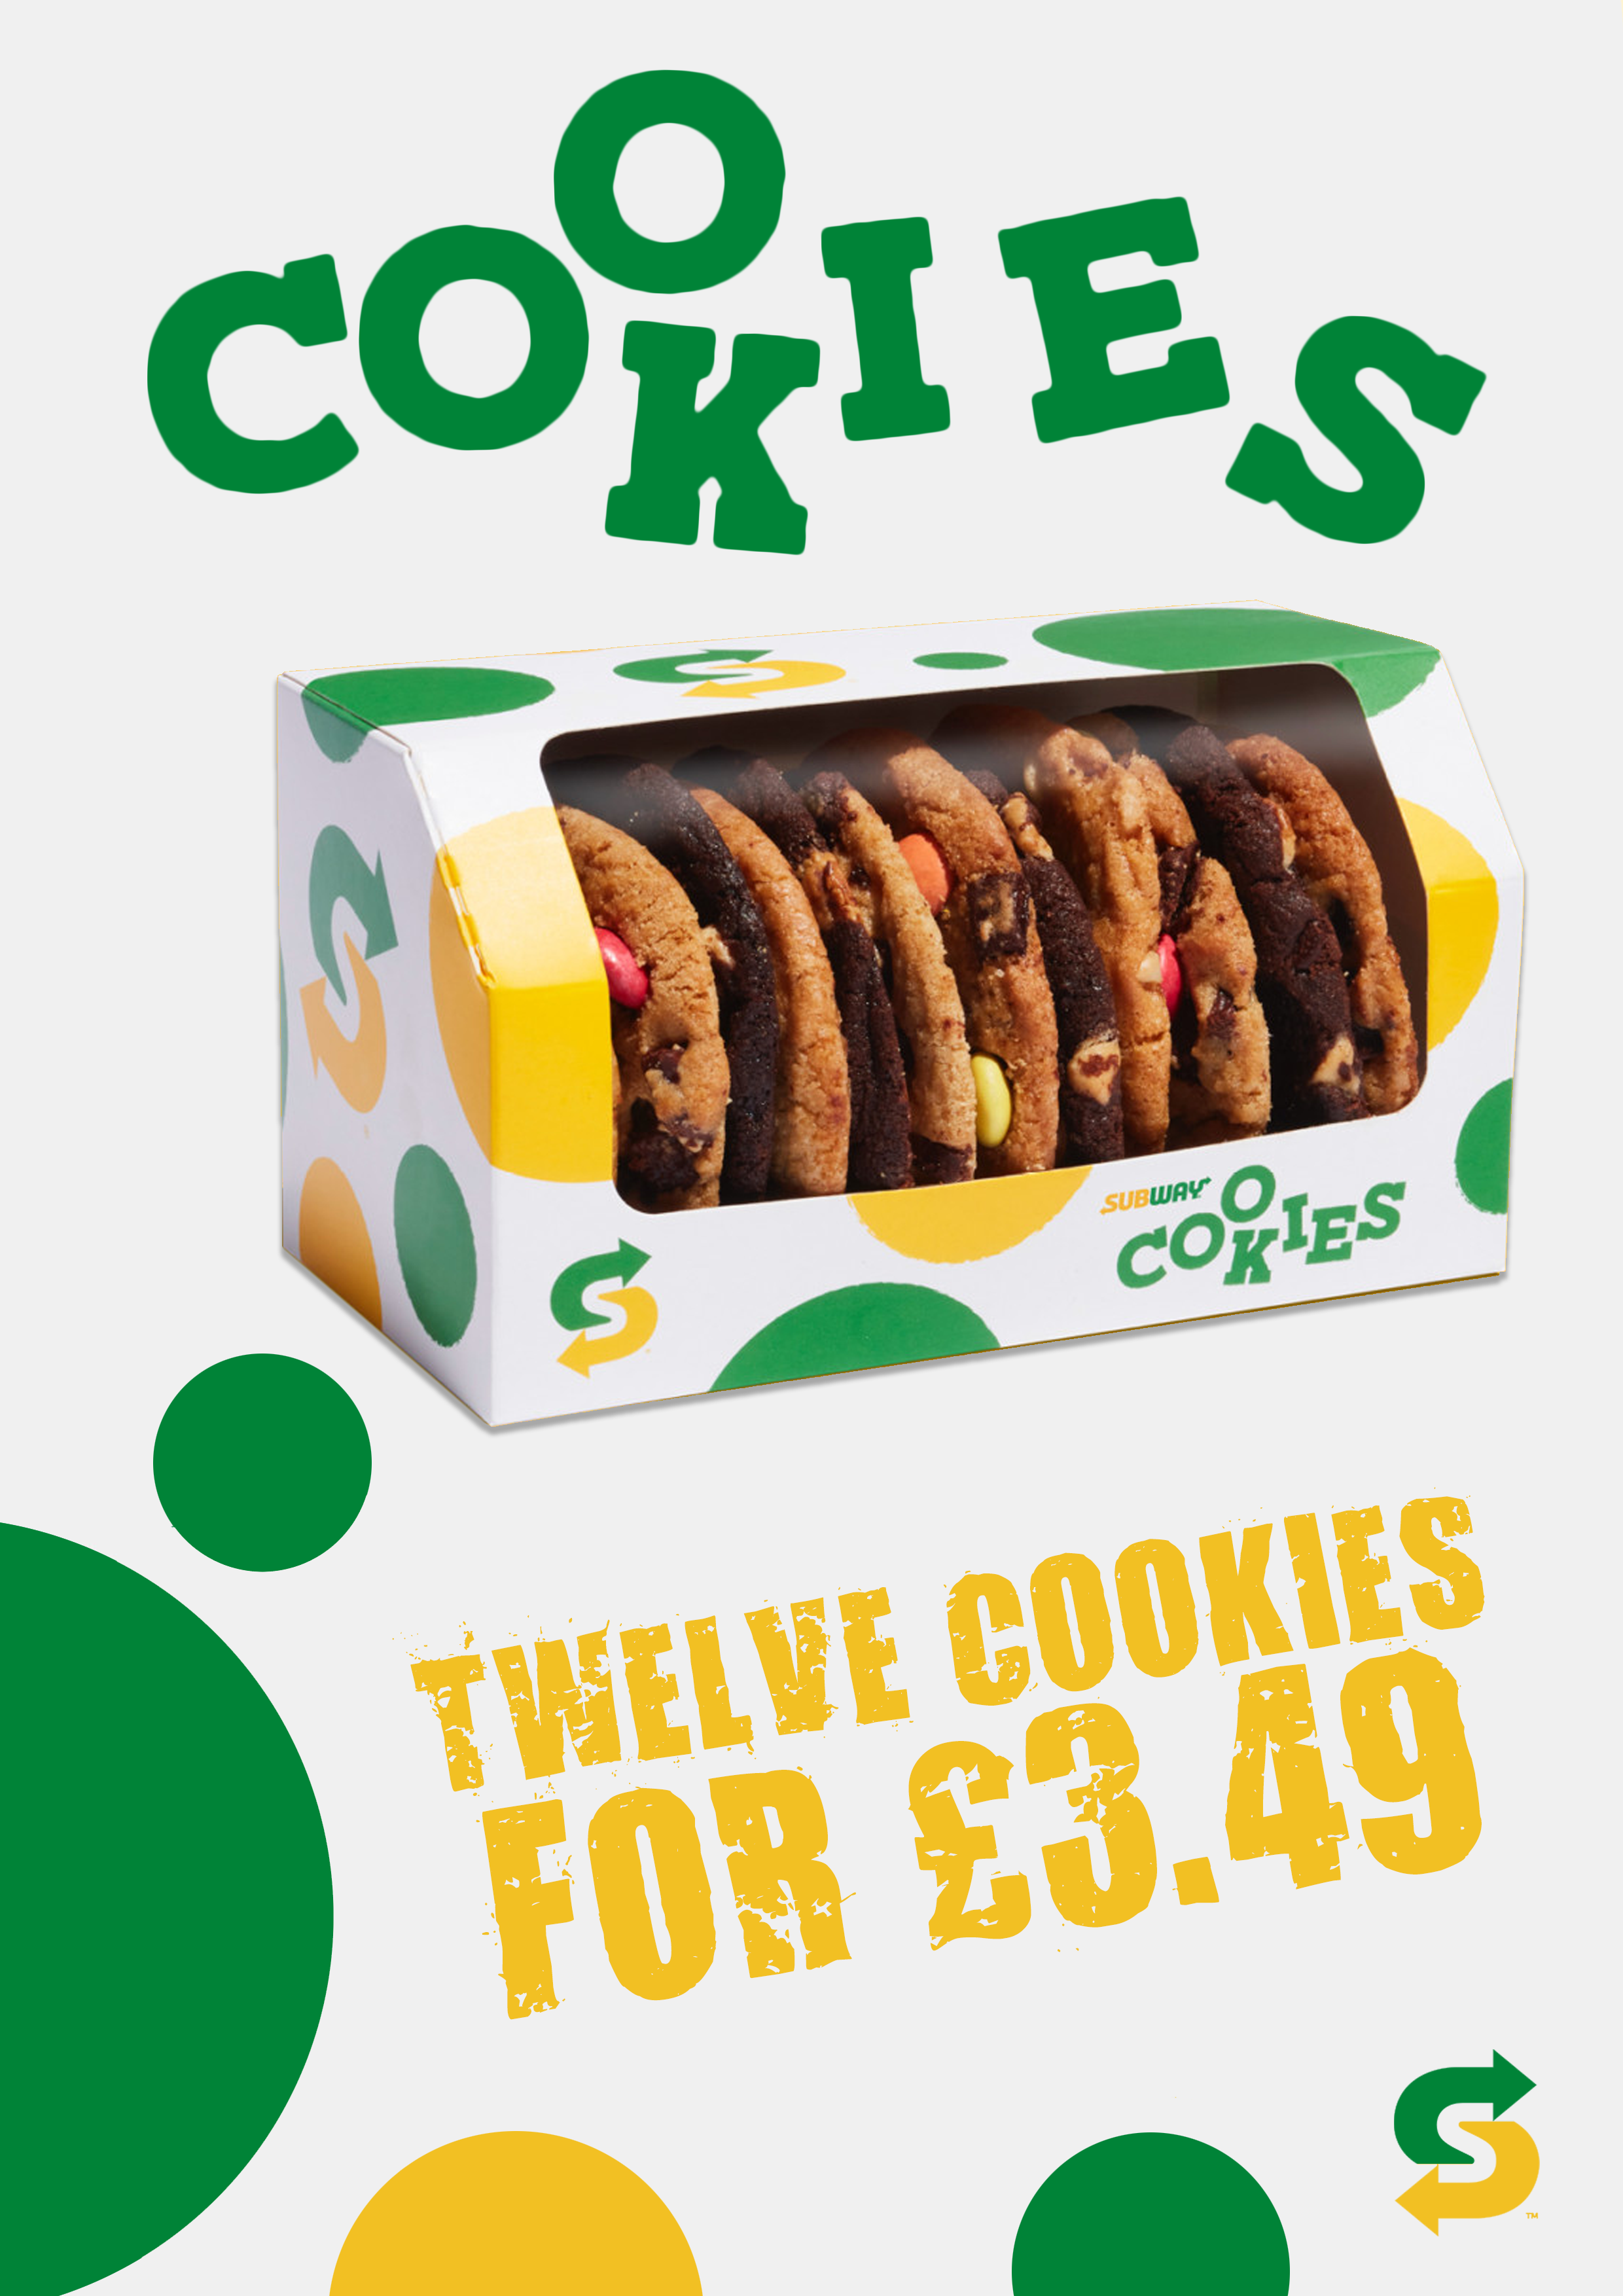 Twelve Cookies for £3.49